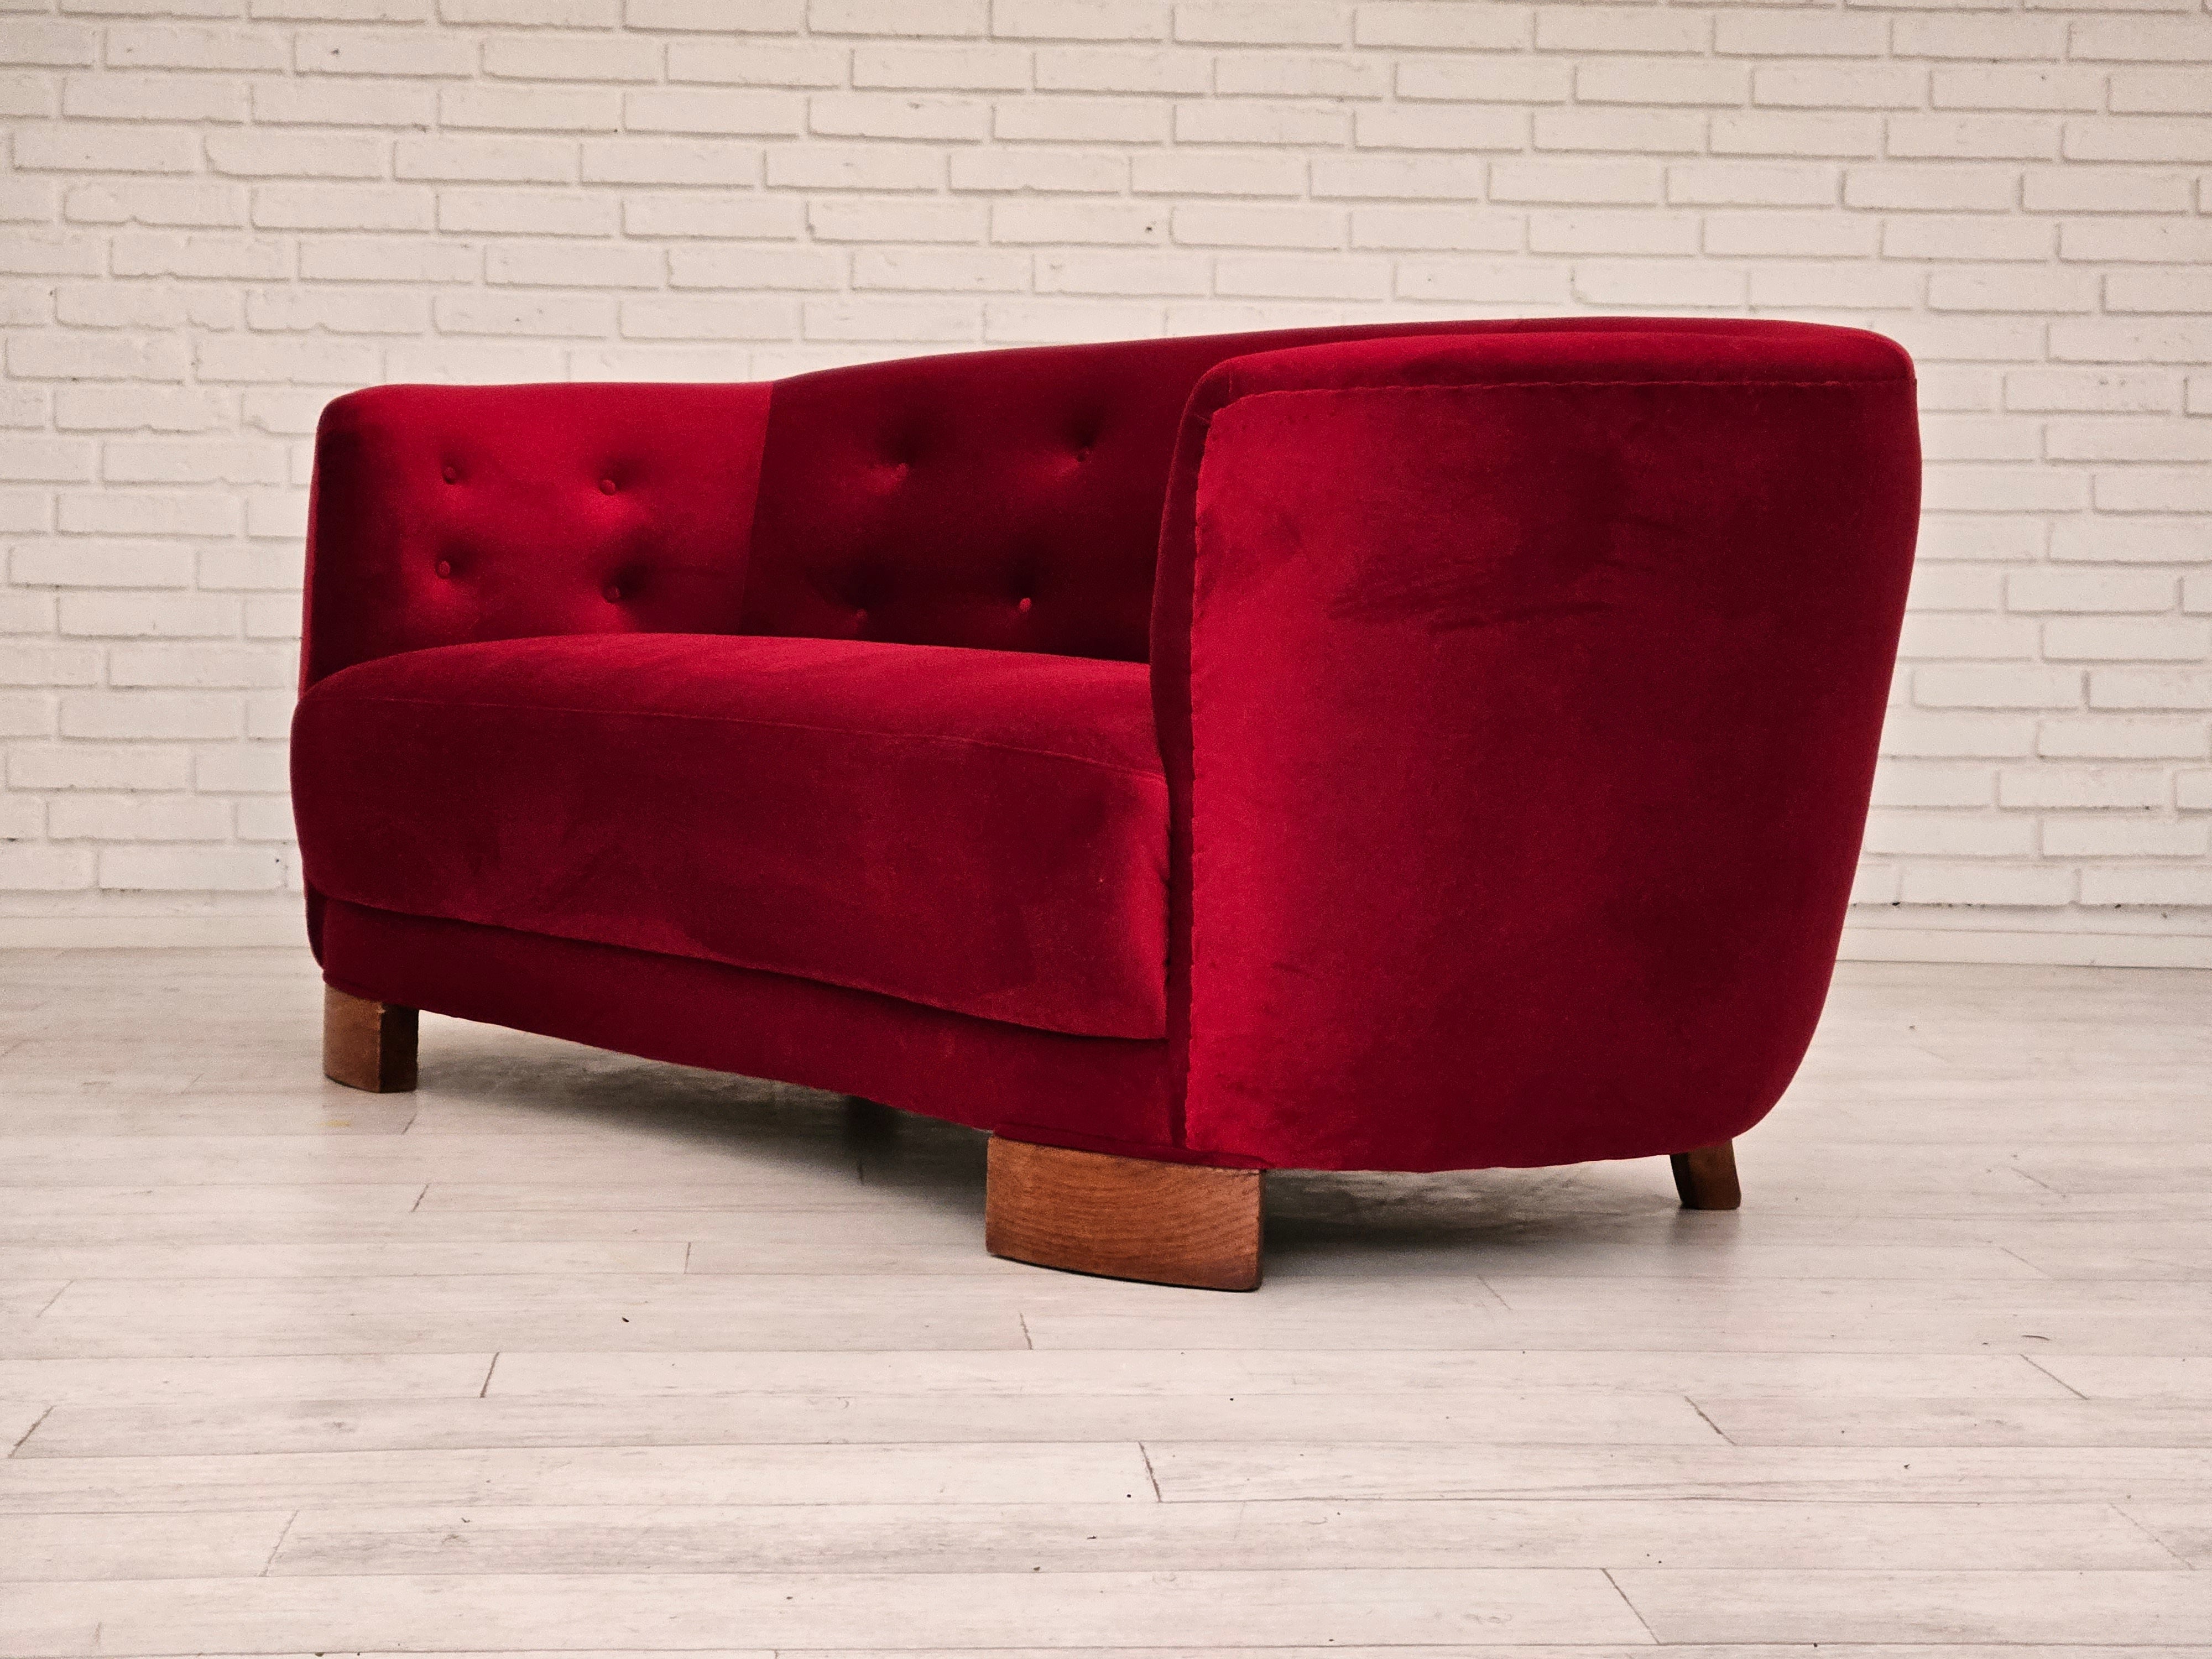 1960erne, Dansk design, renoveret 2 pers. "Banana" sofa, vintage velour.